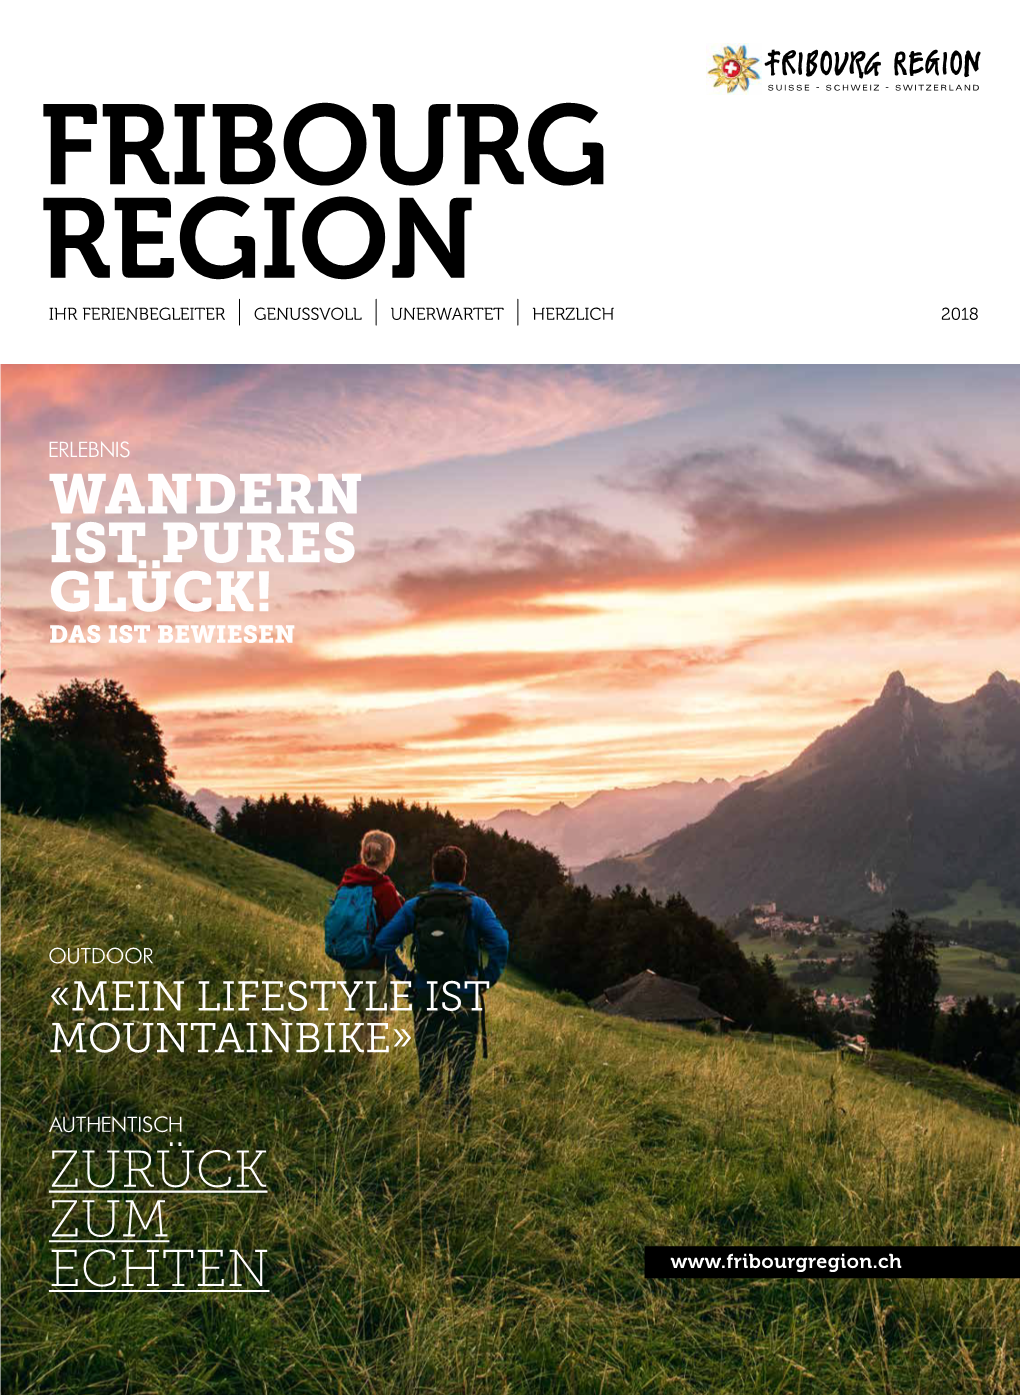 Fribourg Region Ihr Ferienbegleiter Genussvoll Unerwartet Herzlich 2018